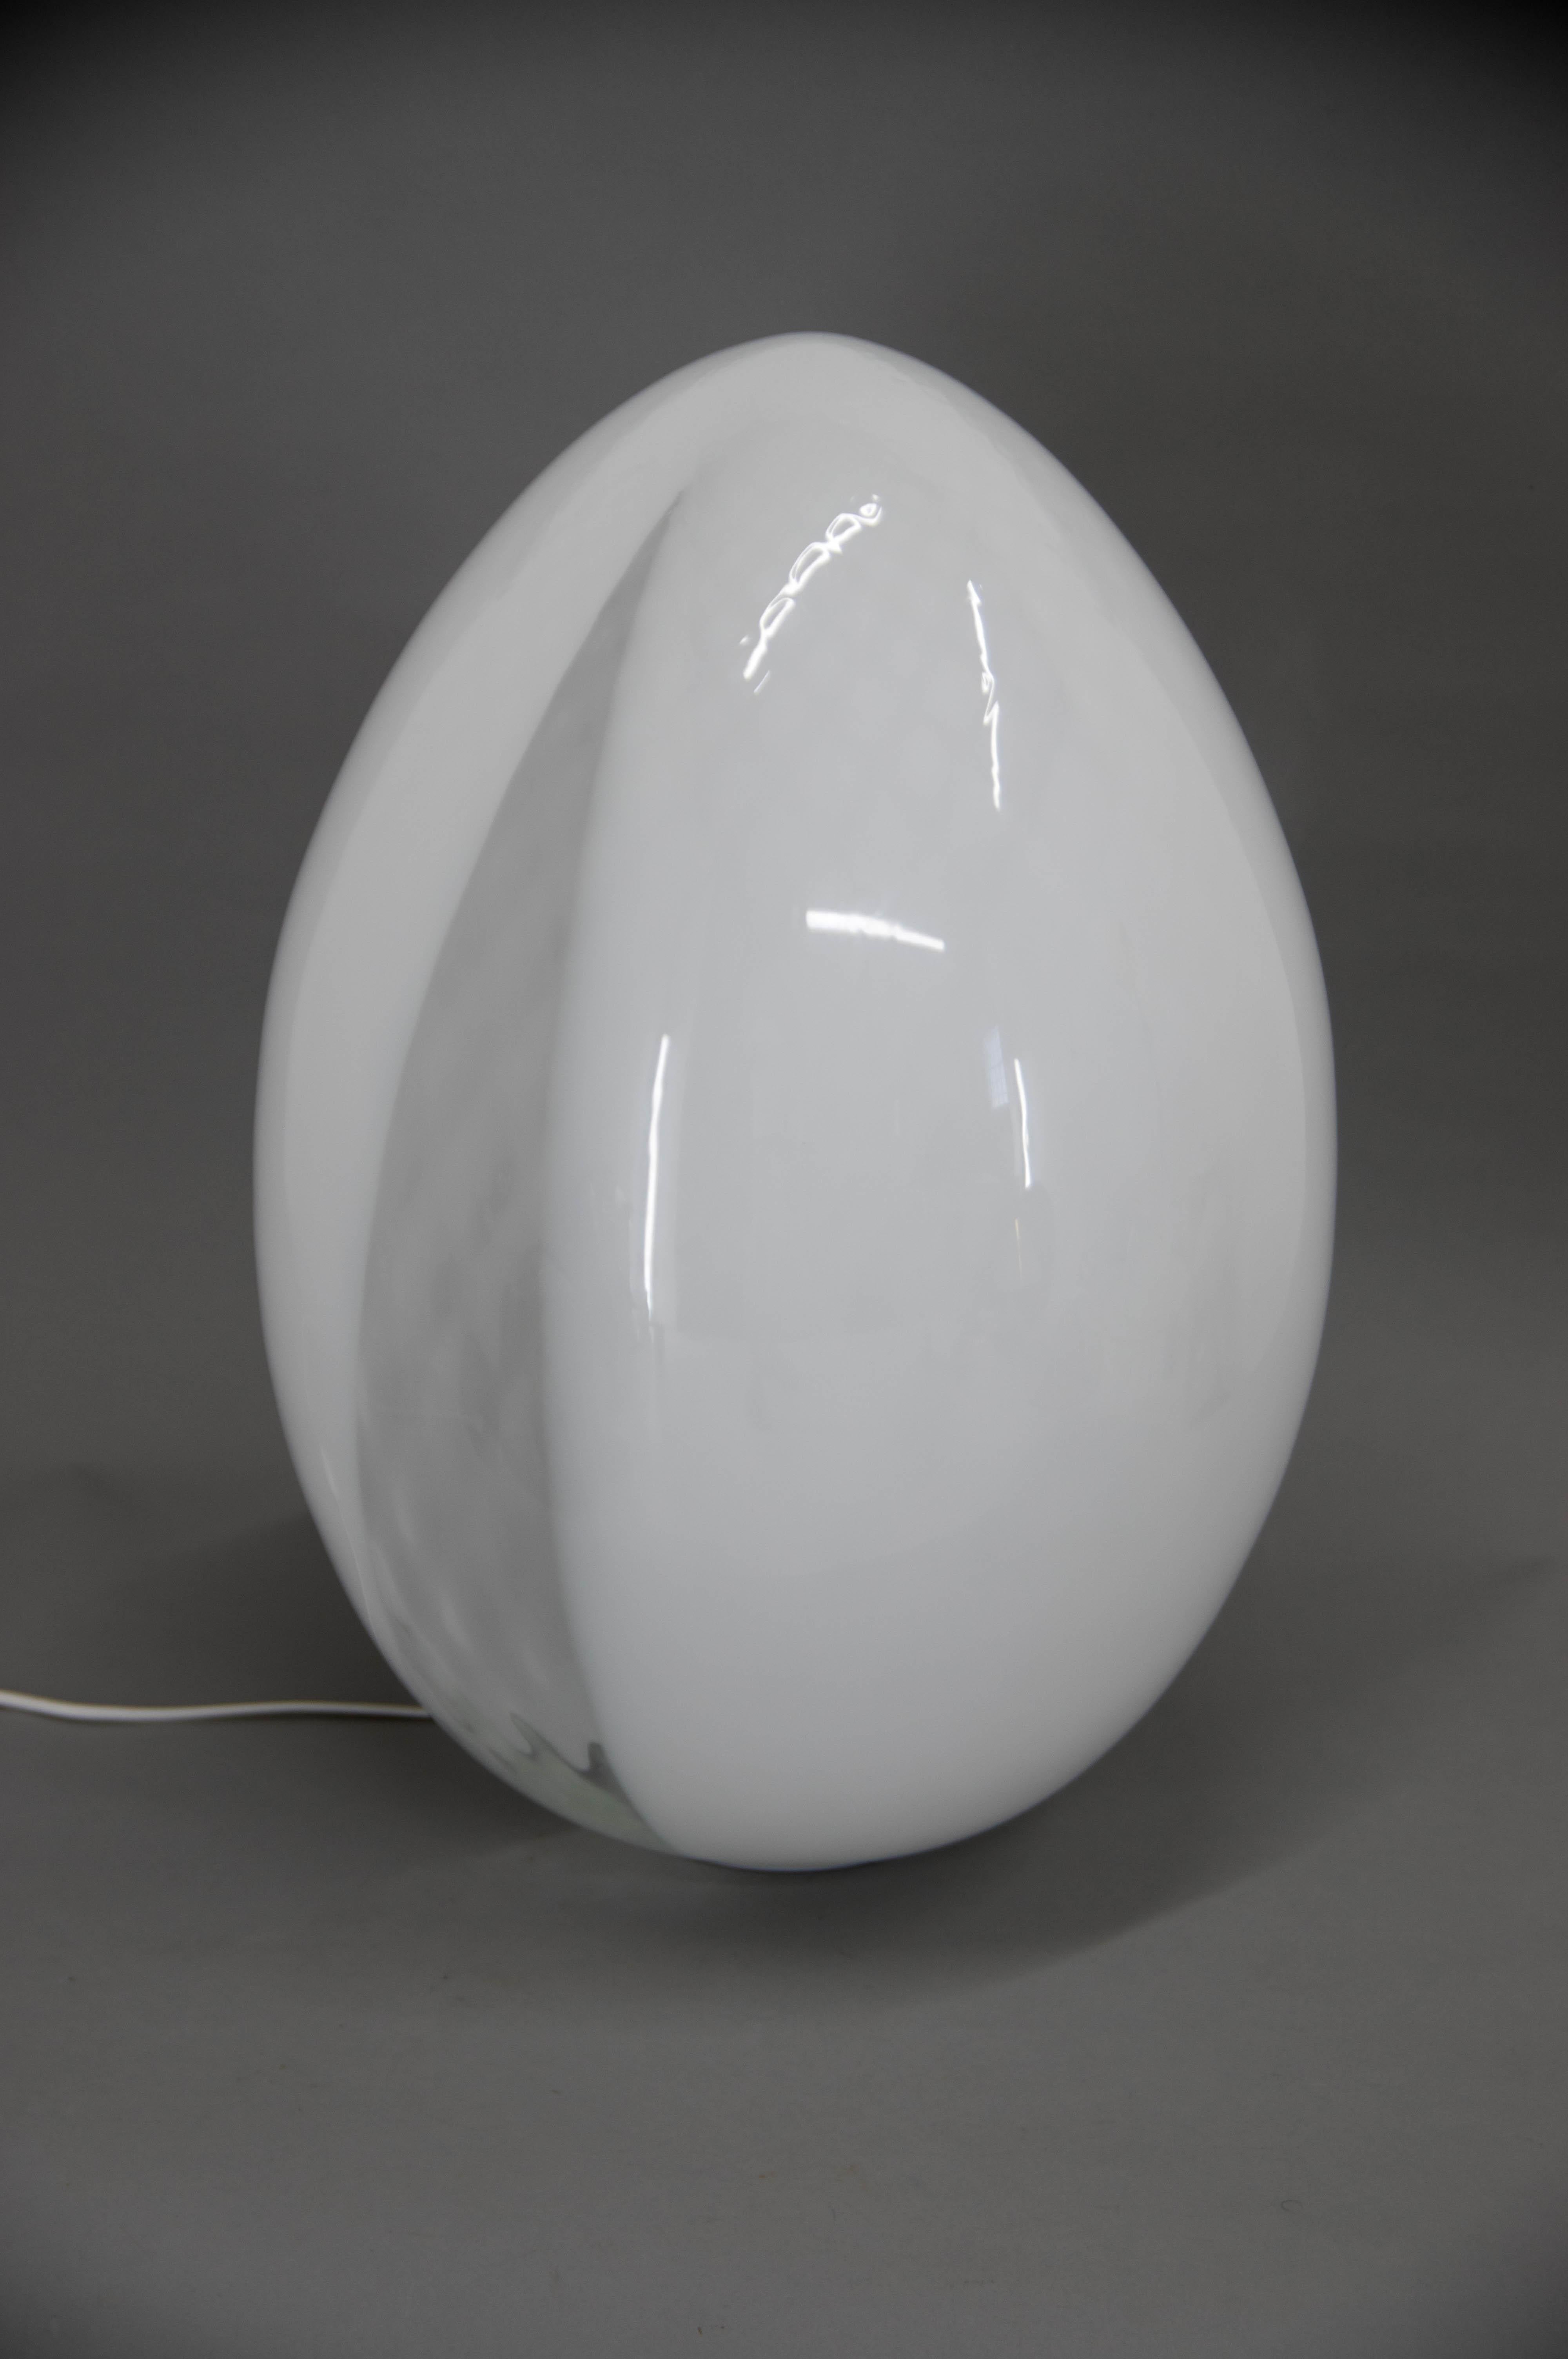 Grande lampe oeuf en verre de Murano.
En verre blanc et transparent
Excellent état.
1x100W, ampoule E25-E27
Adaptateur pour prise américaine inclus.